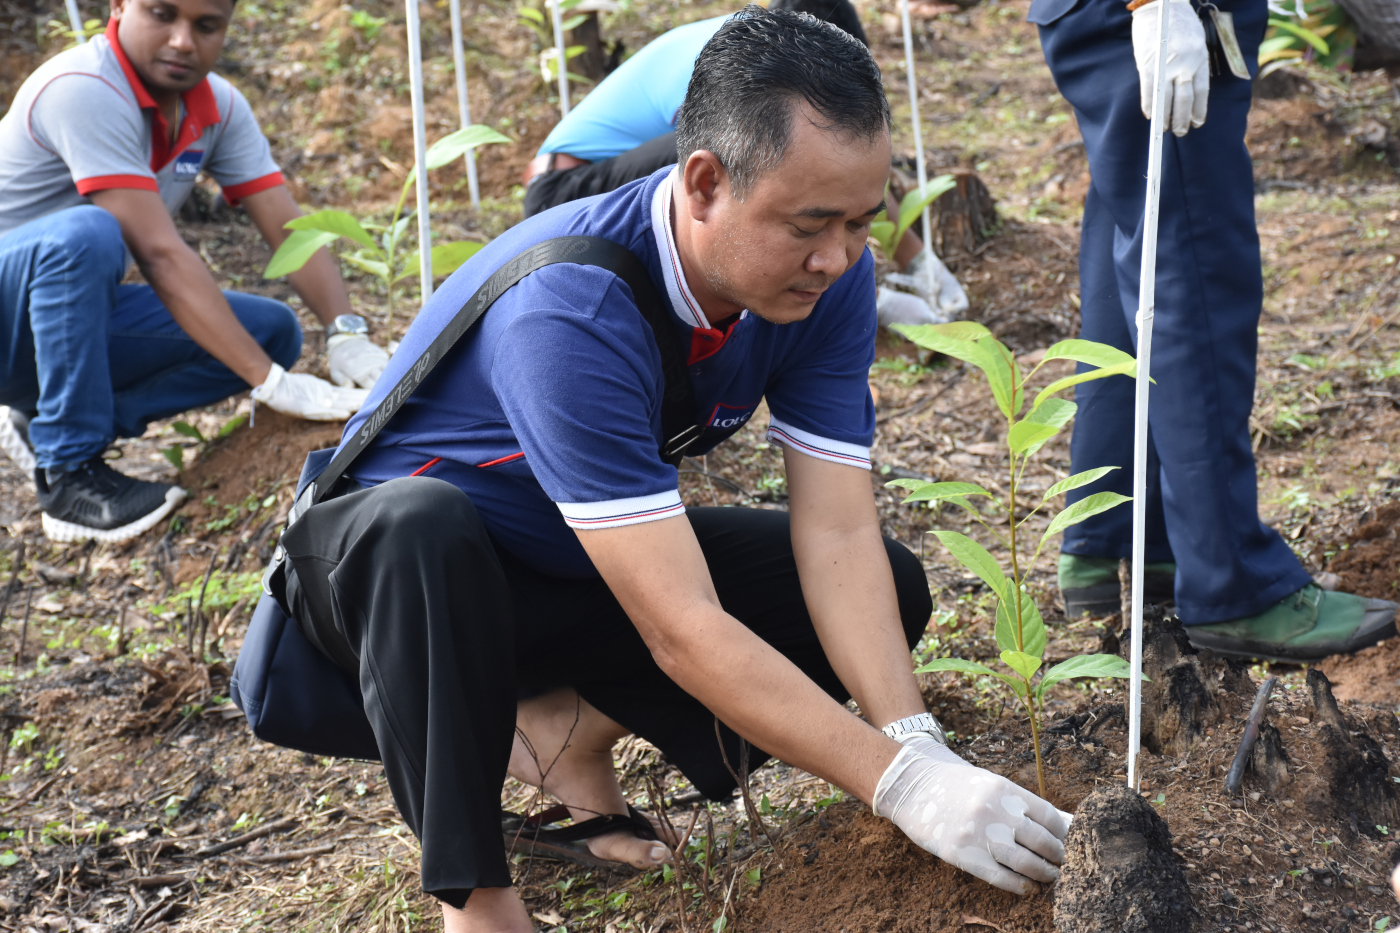 Tree Plantation Day 2019